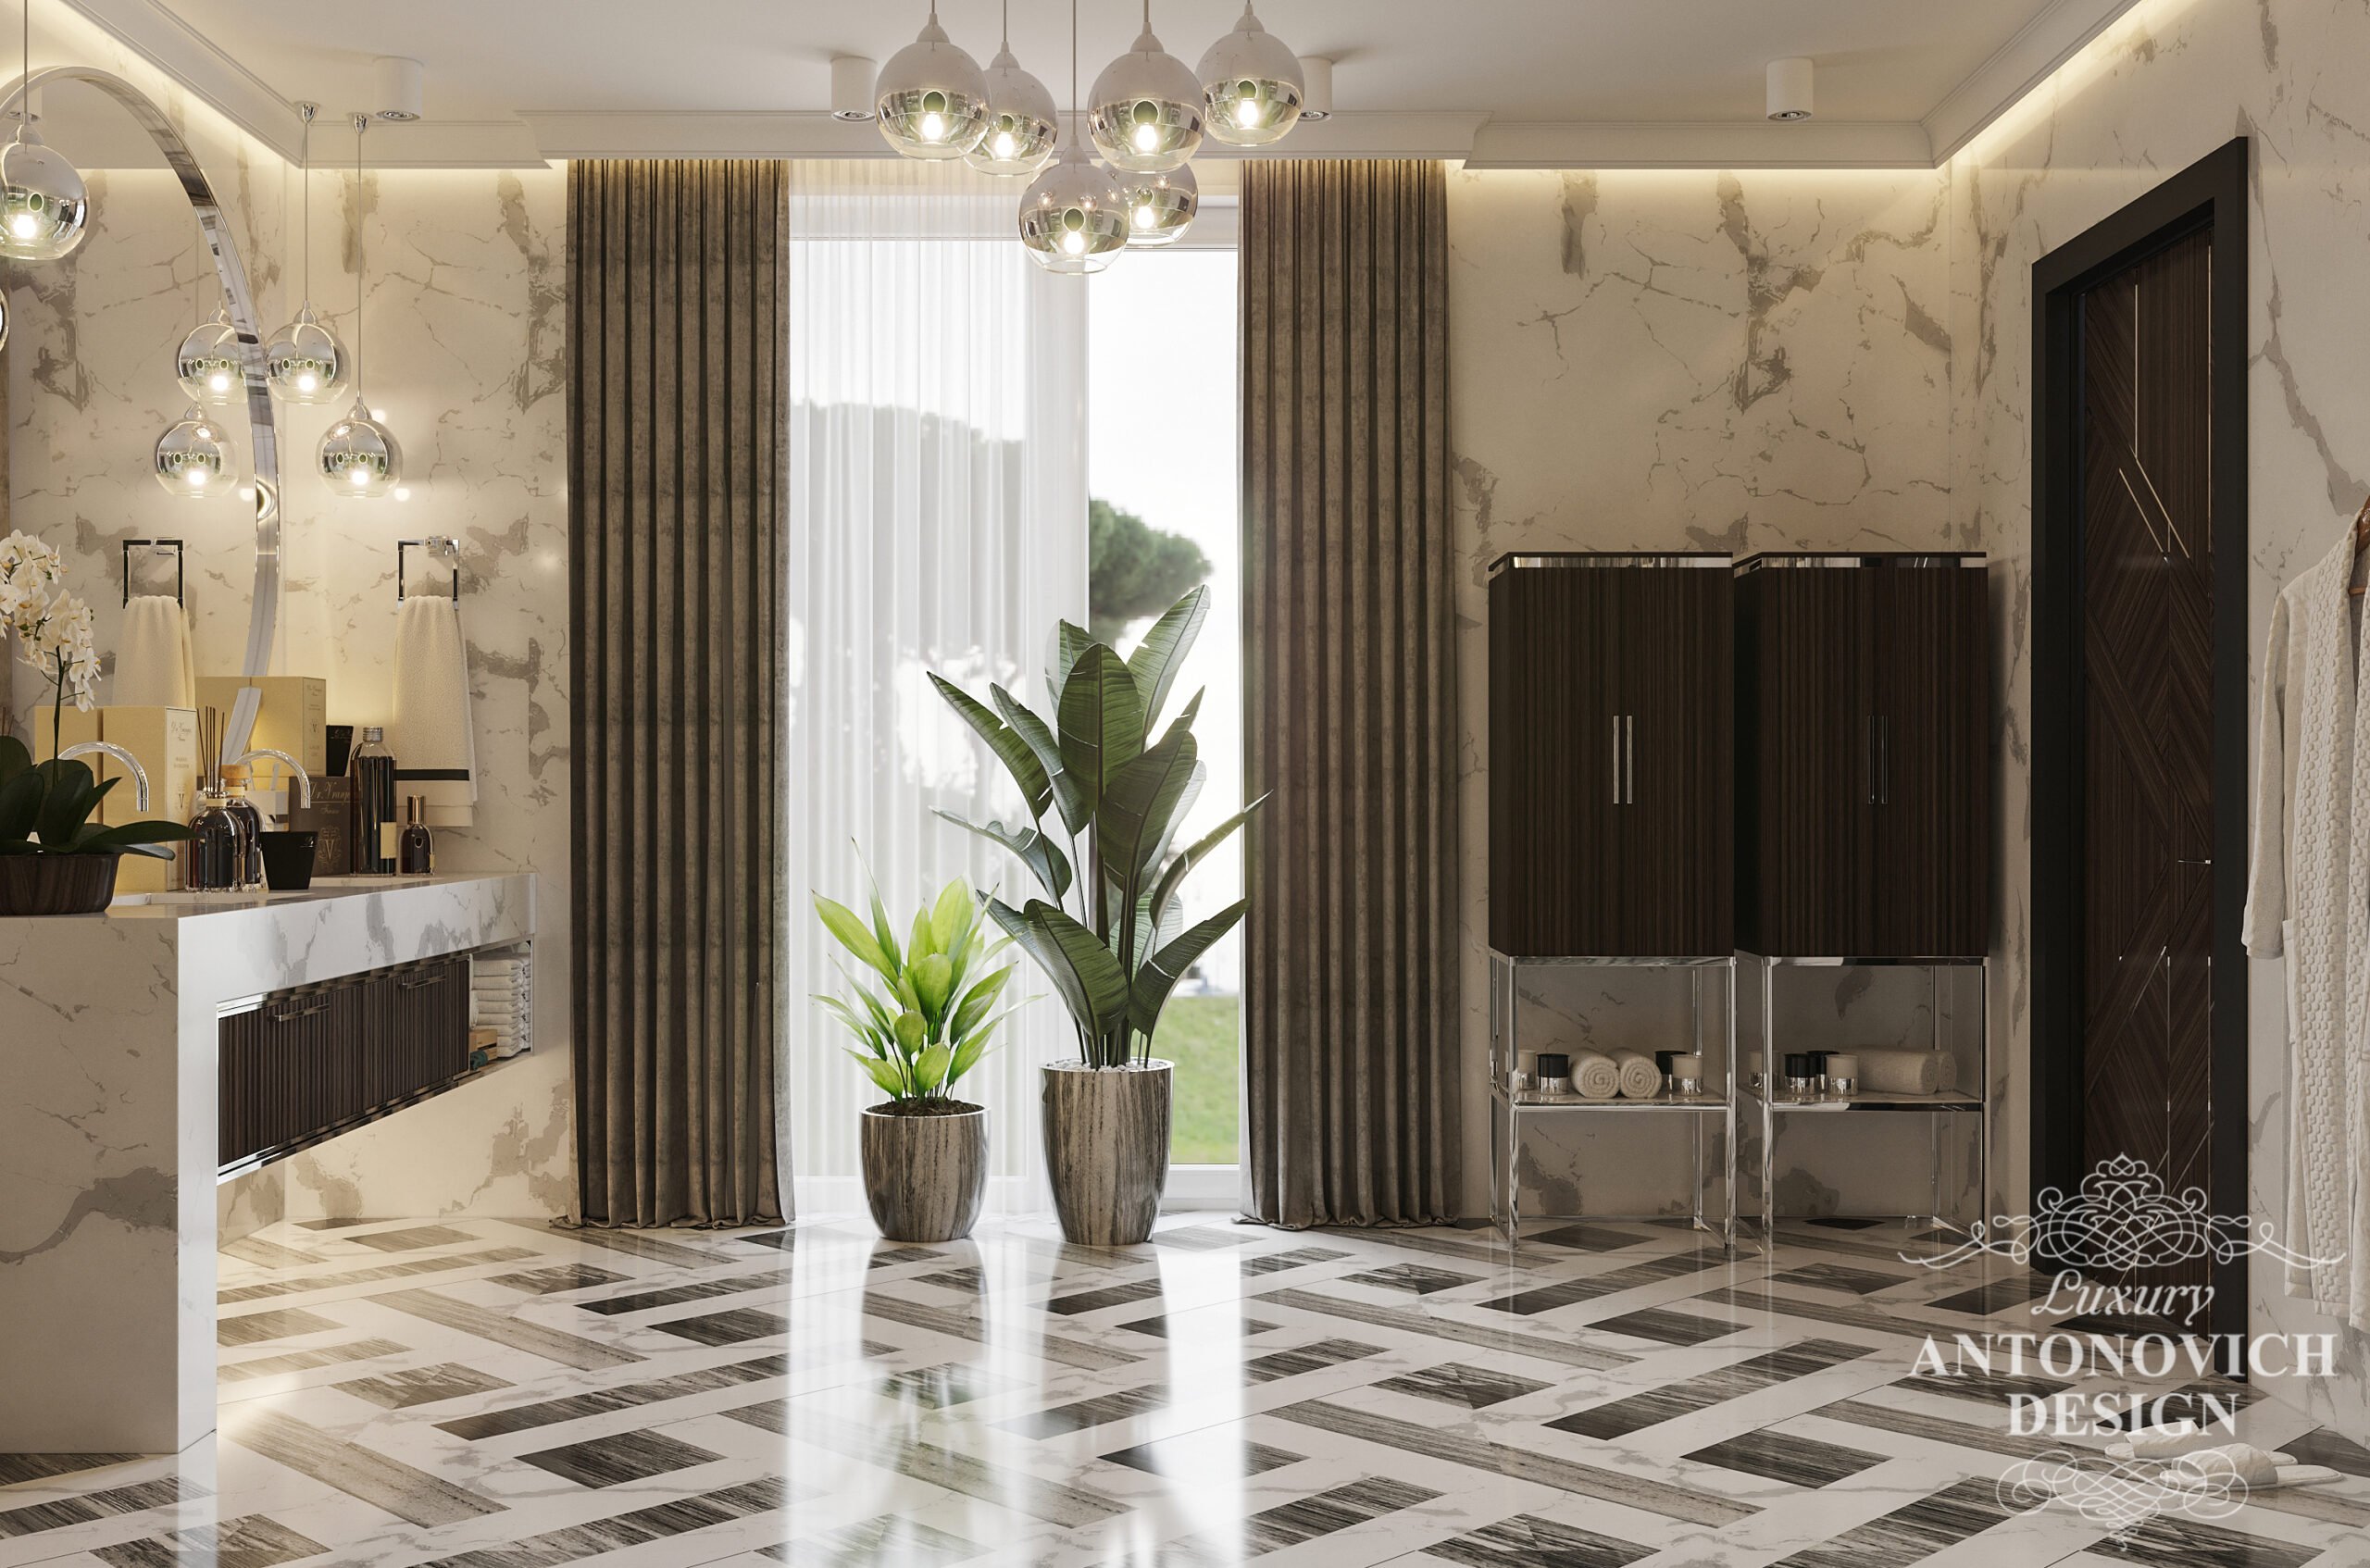 Натуральный мрамор драгоценных итальянских пород в авторском дизайне ванной комнаты